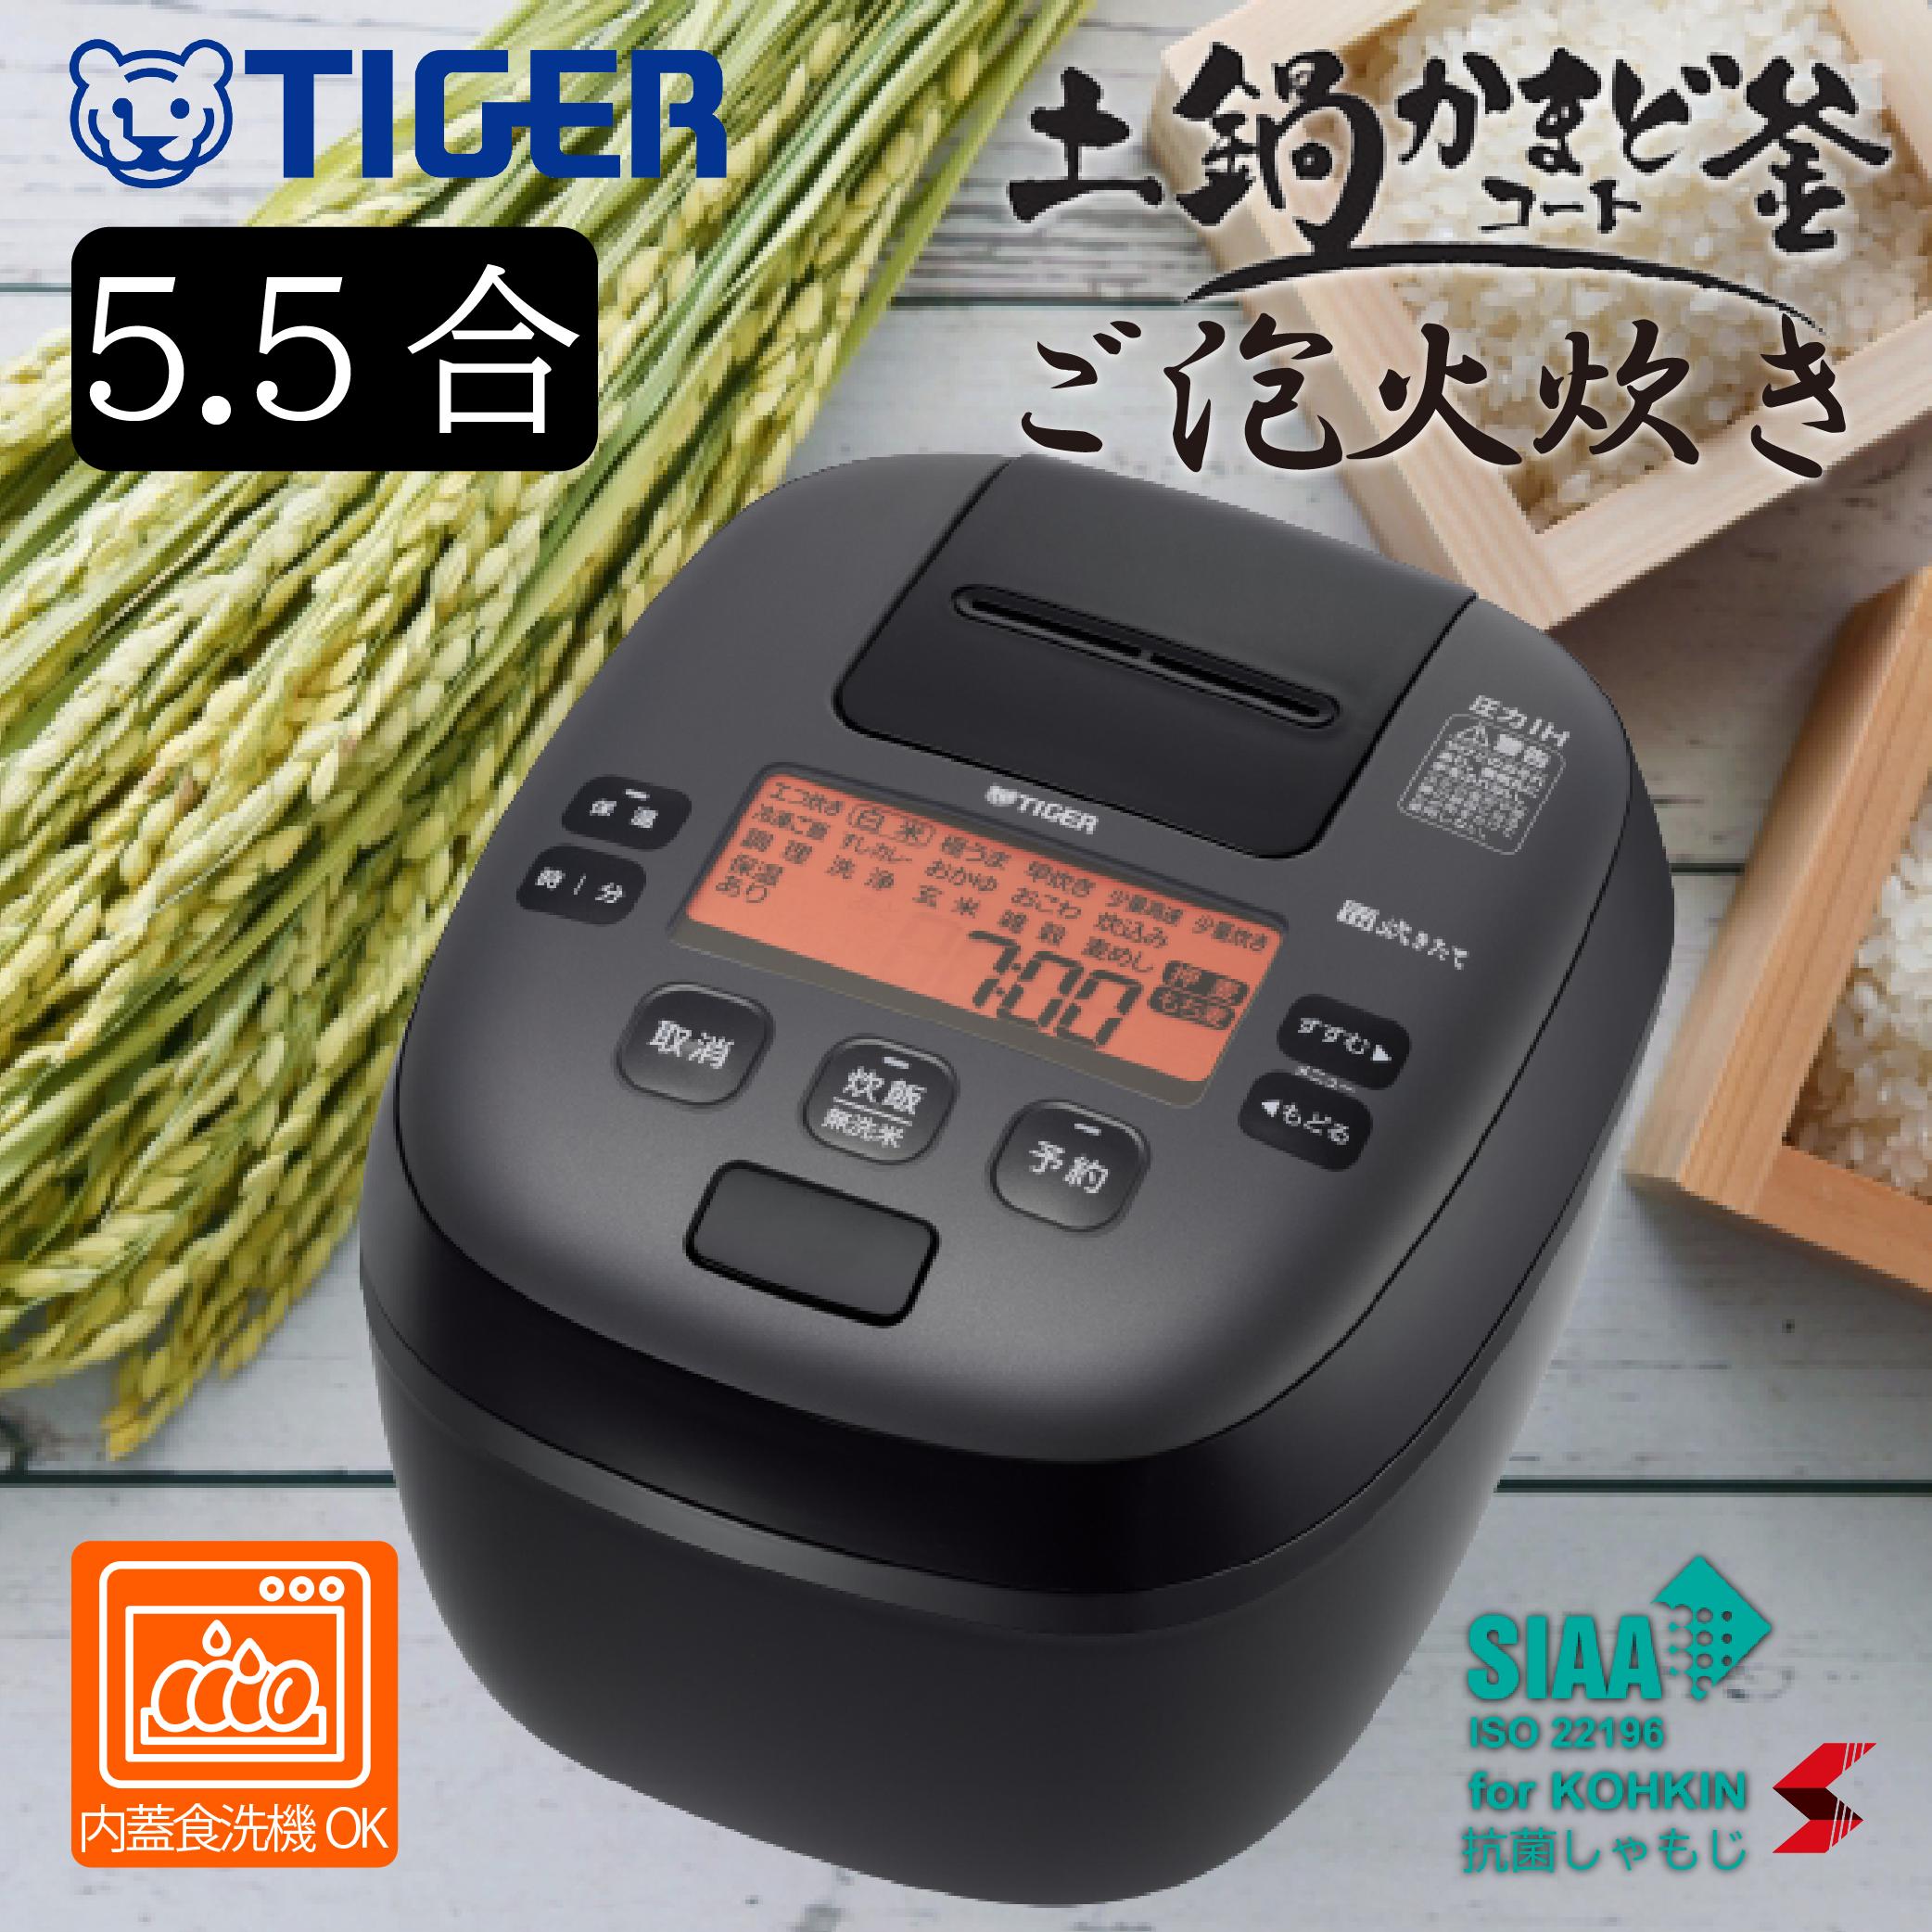 楽天市場】新発売 tiger タイガー魔法瓶 JPI-S180 圧力IHジャー炊飯器 